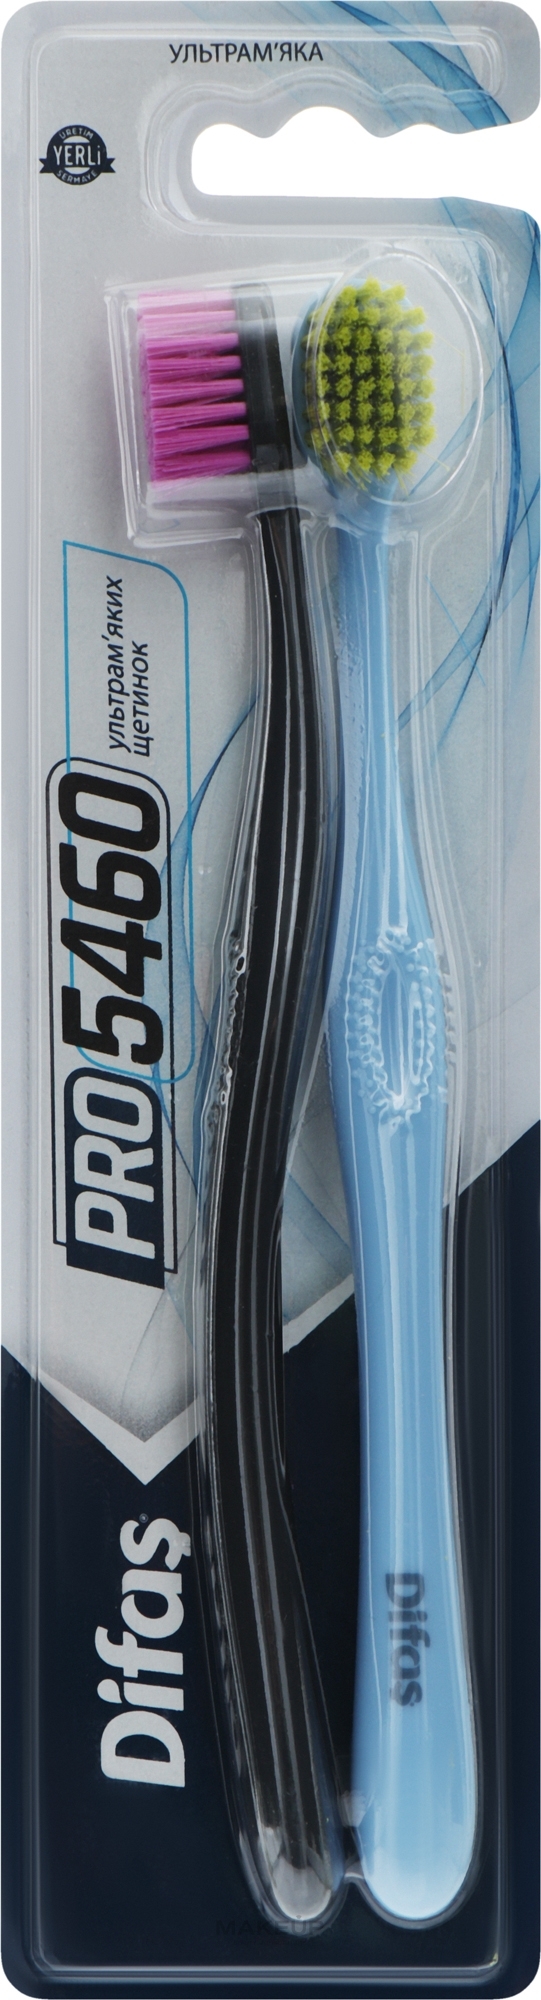 Набор зубных щеток "Ultra Soft", голубая + черная - Difas PRO 5460 — фото 2шт